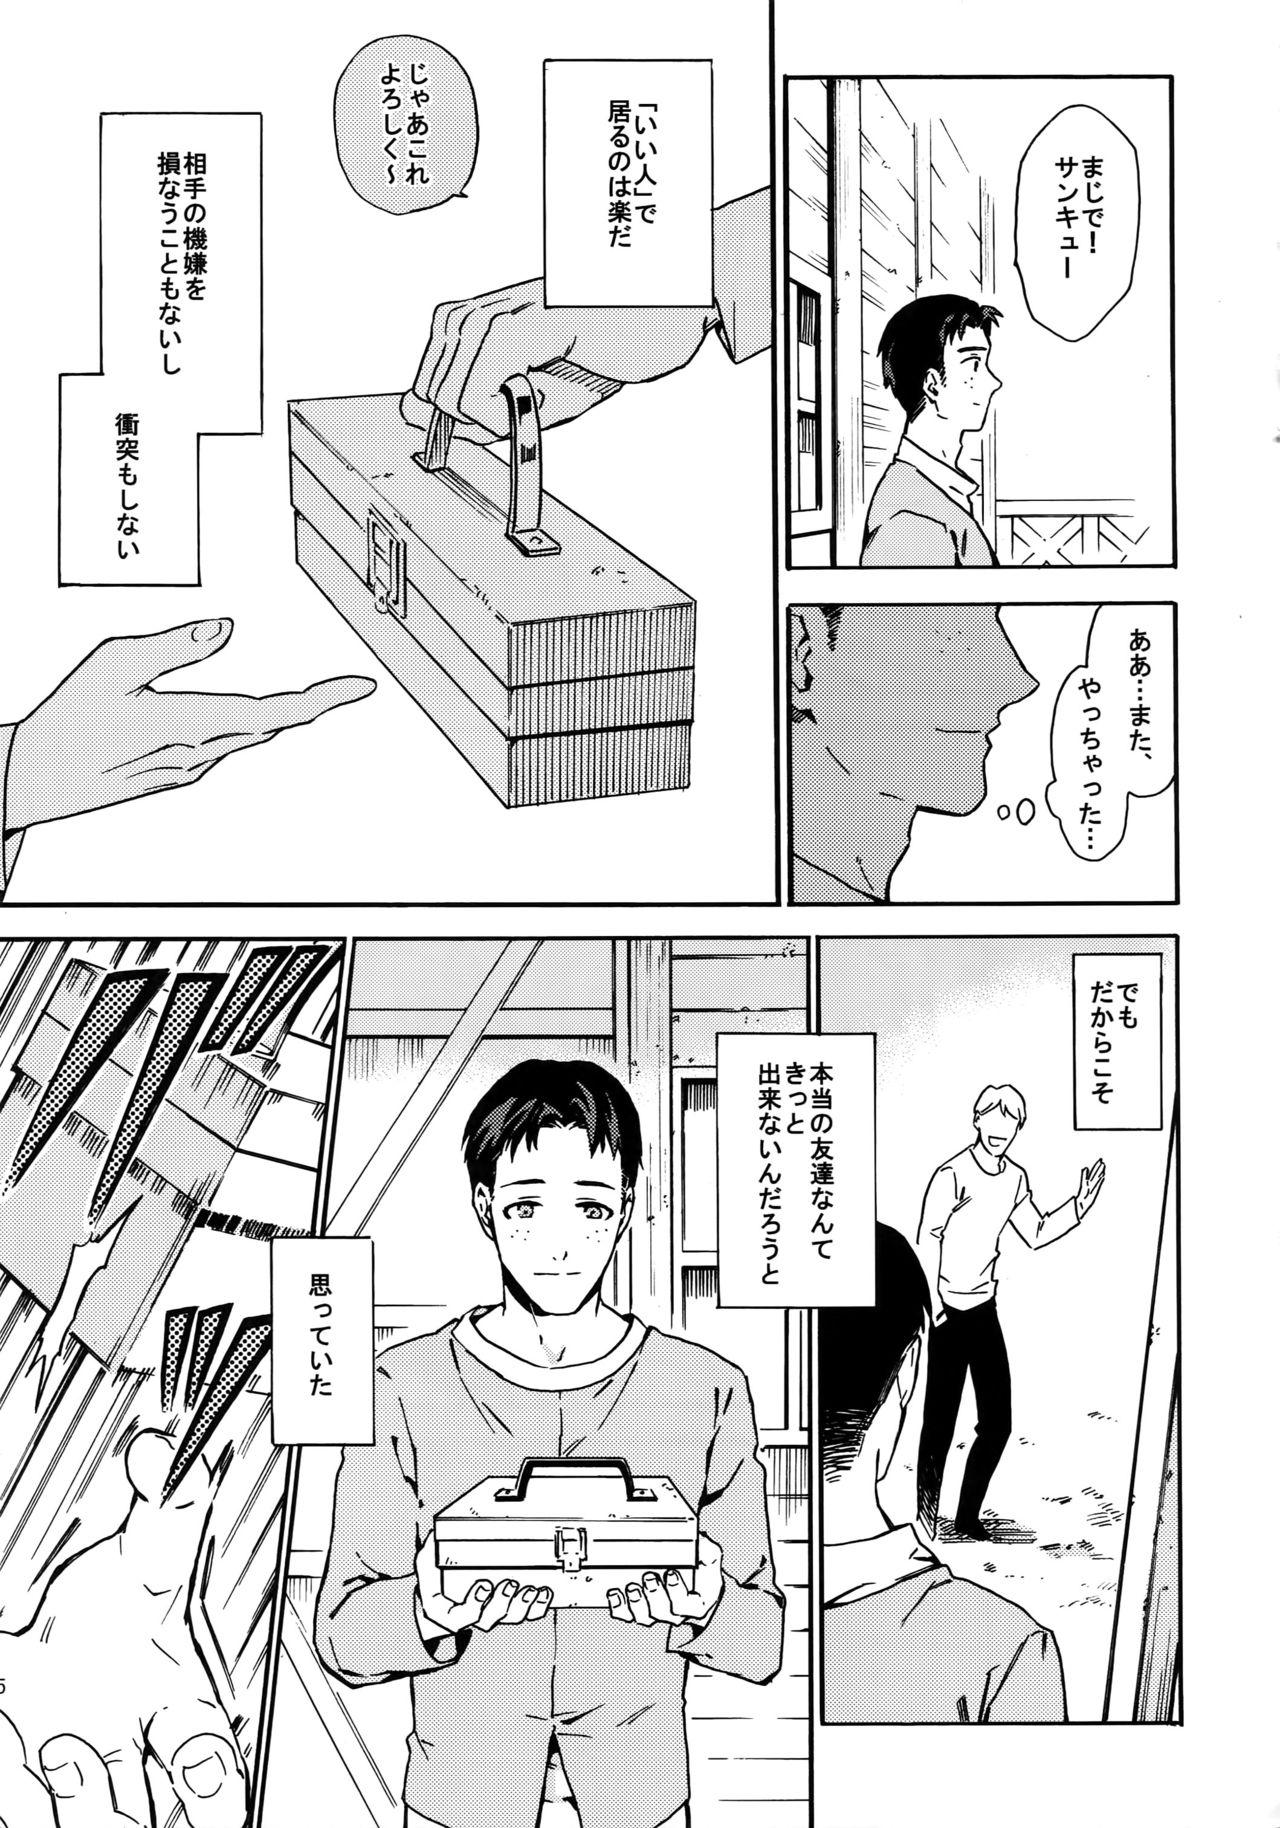 Cams Koufuku Paradox - Shingeki no kyojin Suruba - Page 4